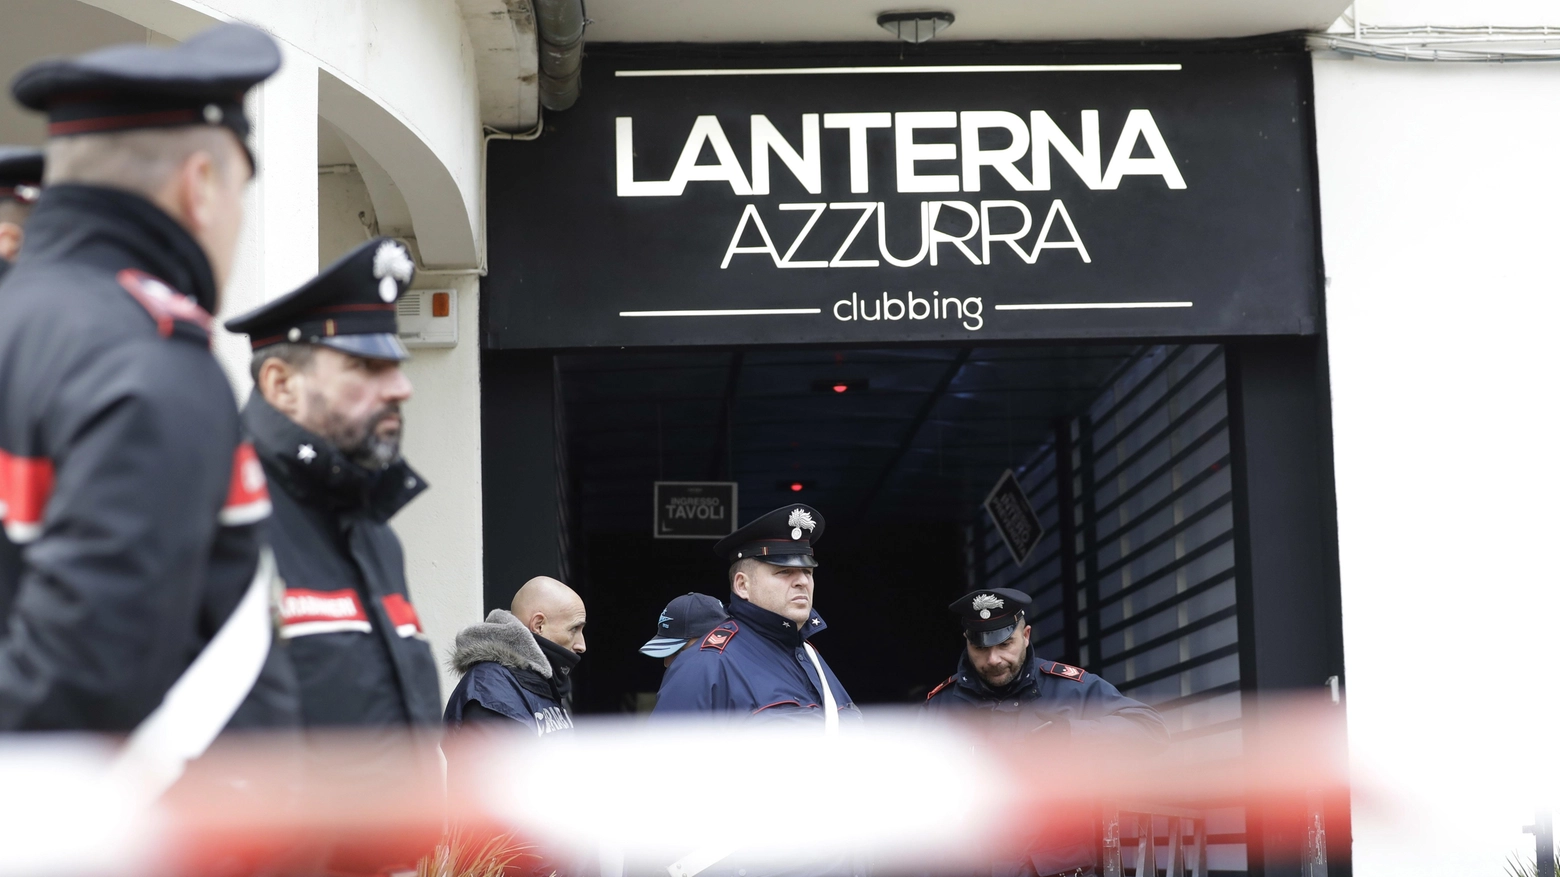 Sei morti alla discoteca Lanterna Azzurra di Corinaldo (Ancona)